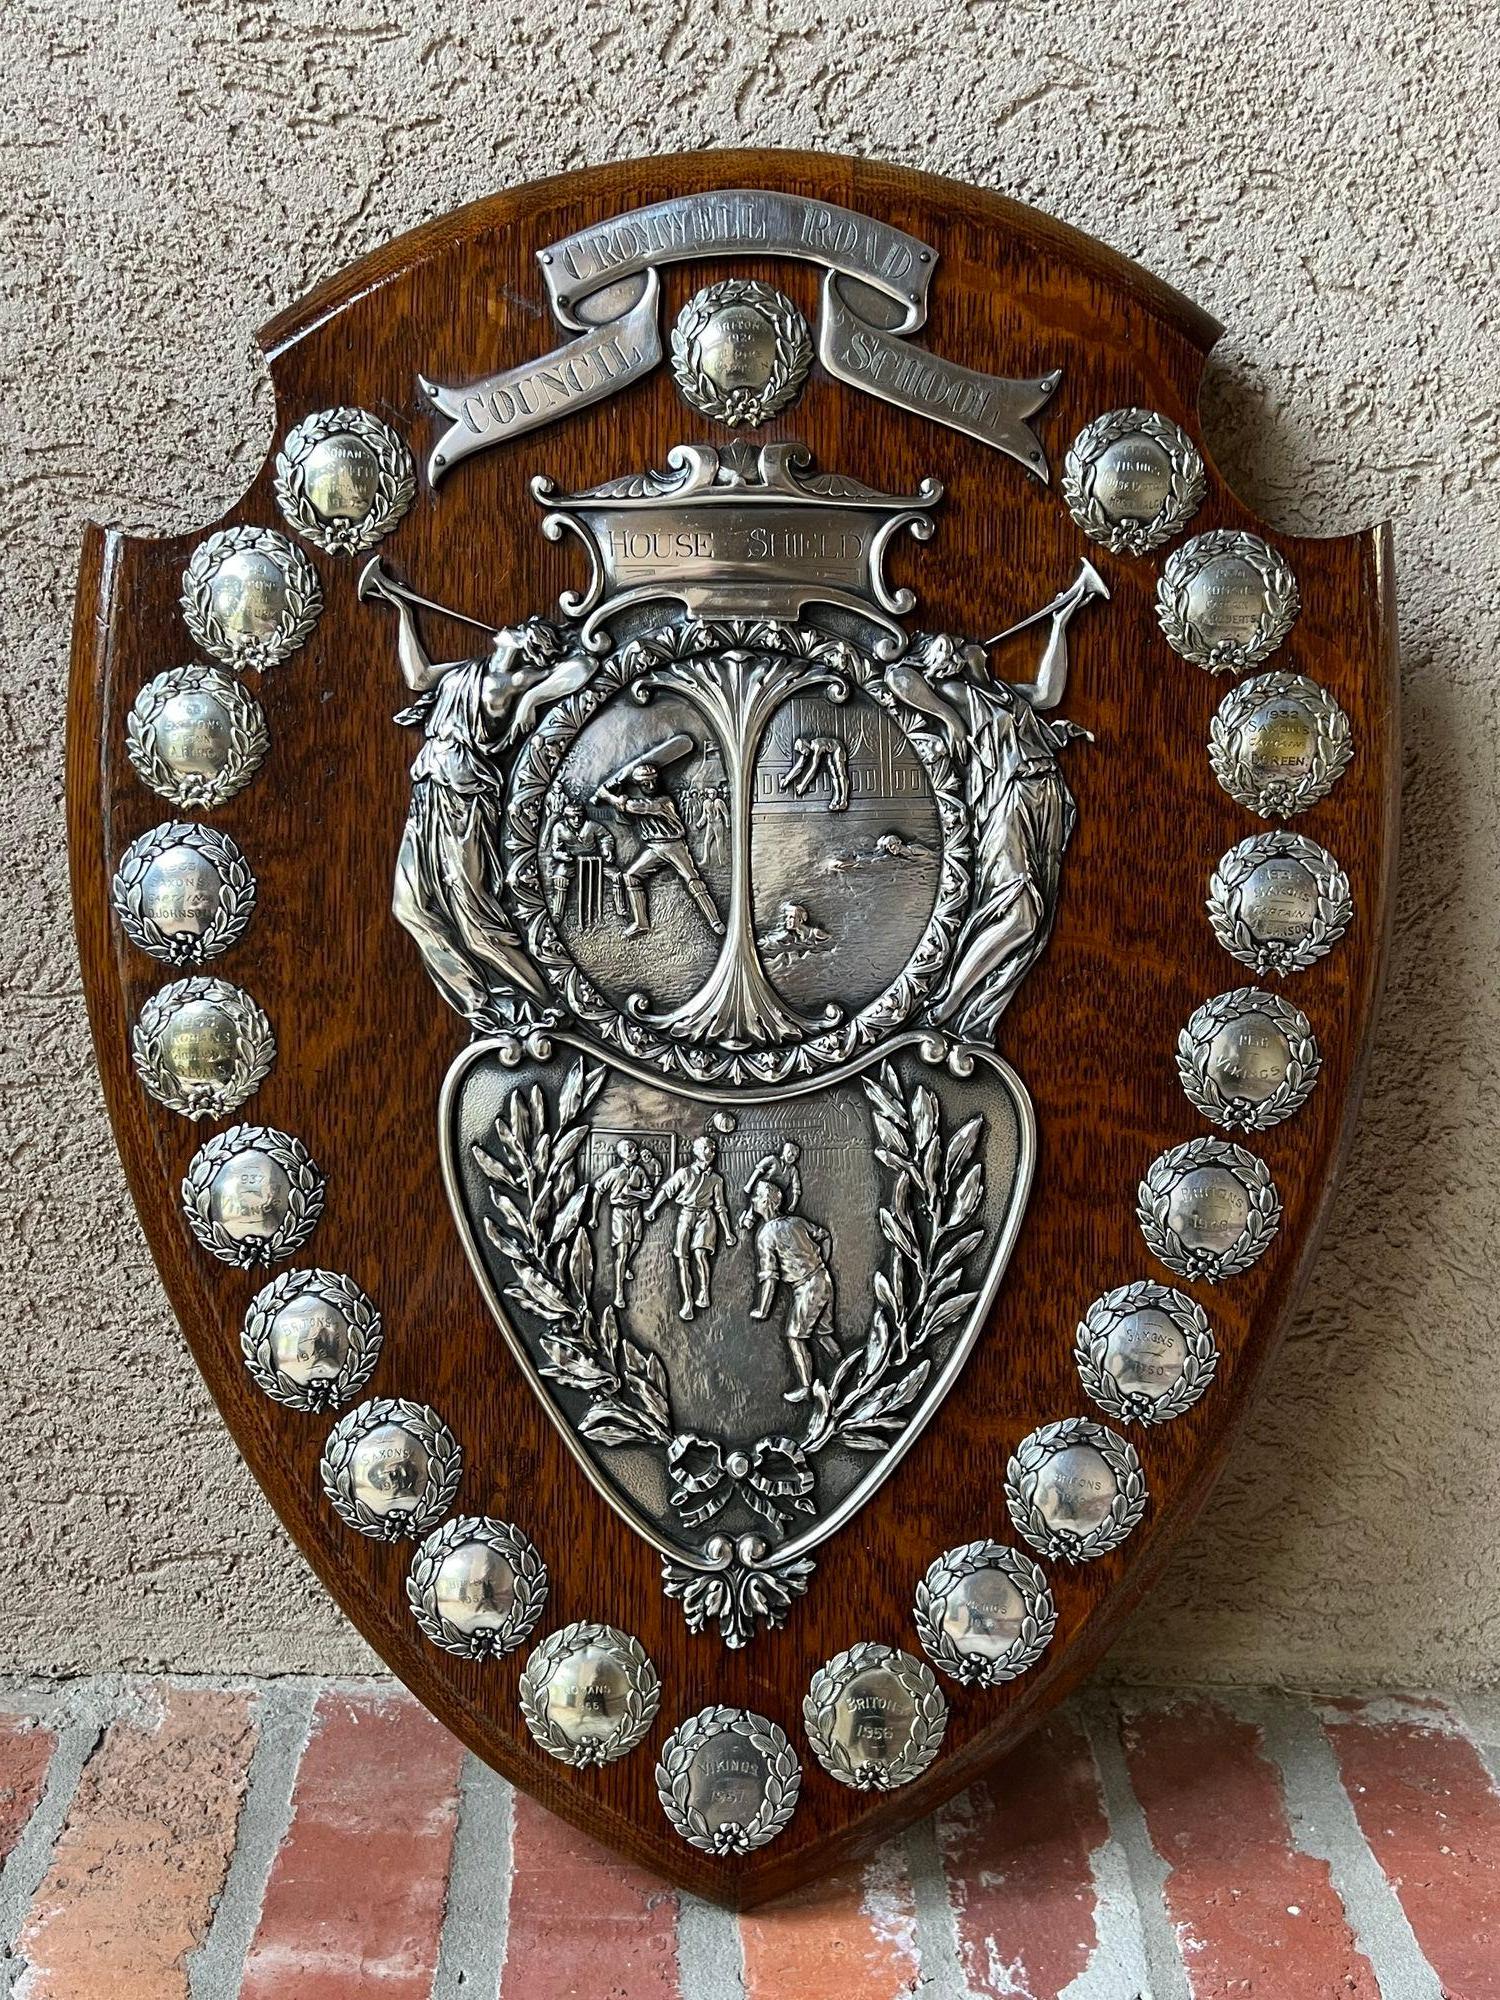 Trophée anglais ancien Baseball Soccer Swimming Award Silver Plate c1926.
En provenance directe d'Angleterre, nous disposons de plusieurs de ces trophées anglais uniques en leur genre qui regorgent de provenance, et oh 